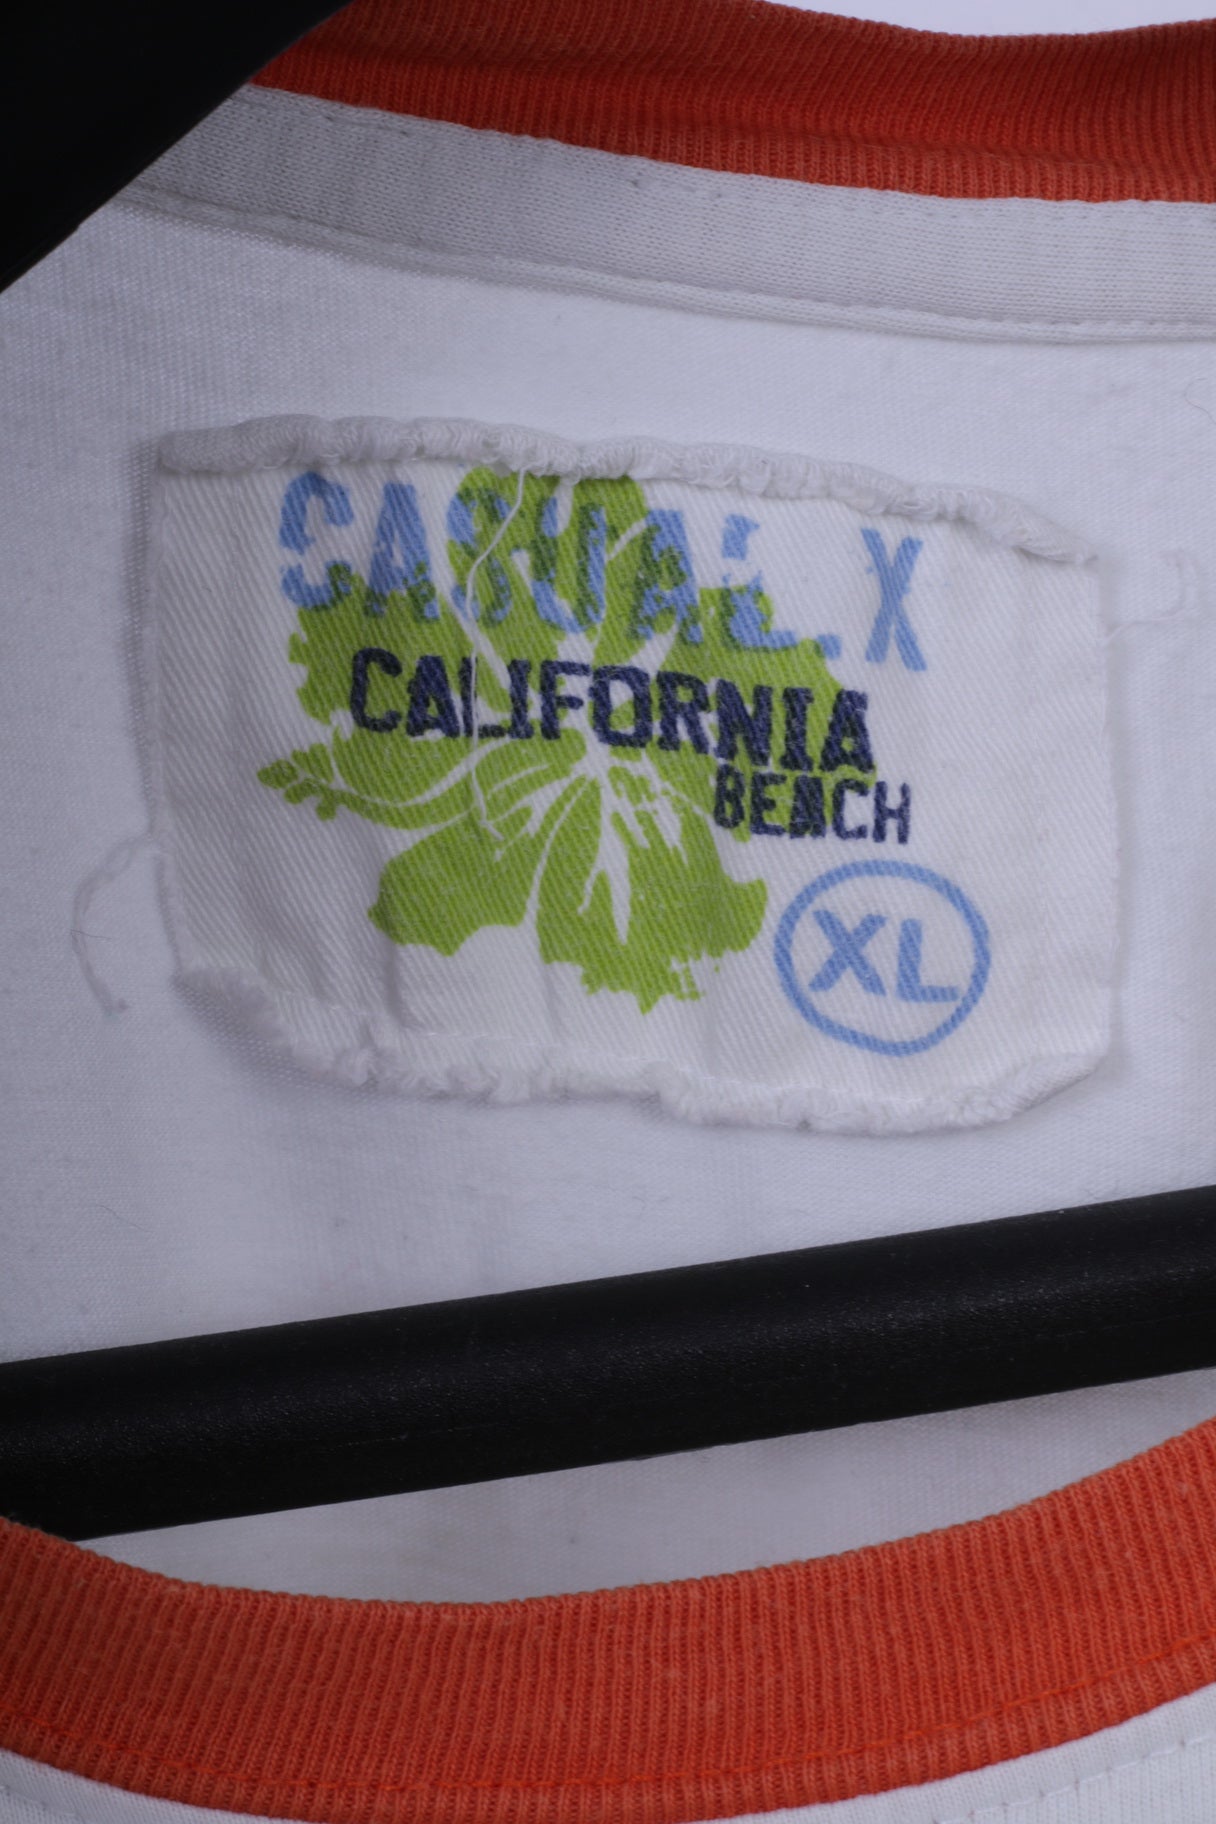 California Beach Mens XL T-Shirt White Cotton Graphic Long Beach Top